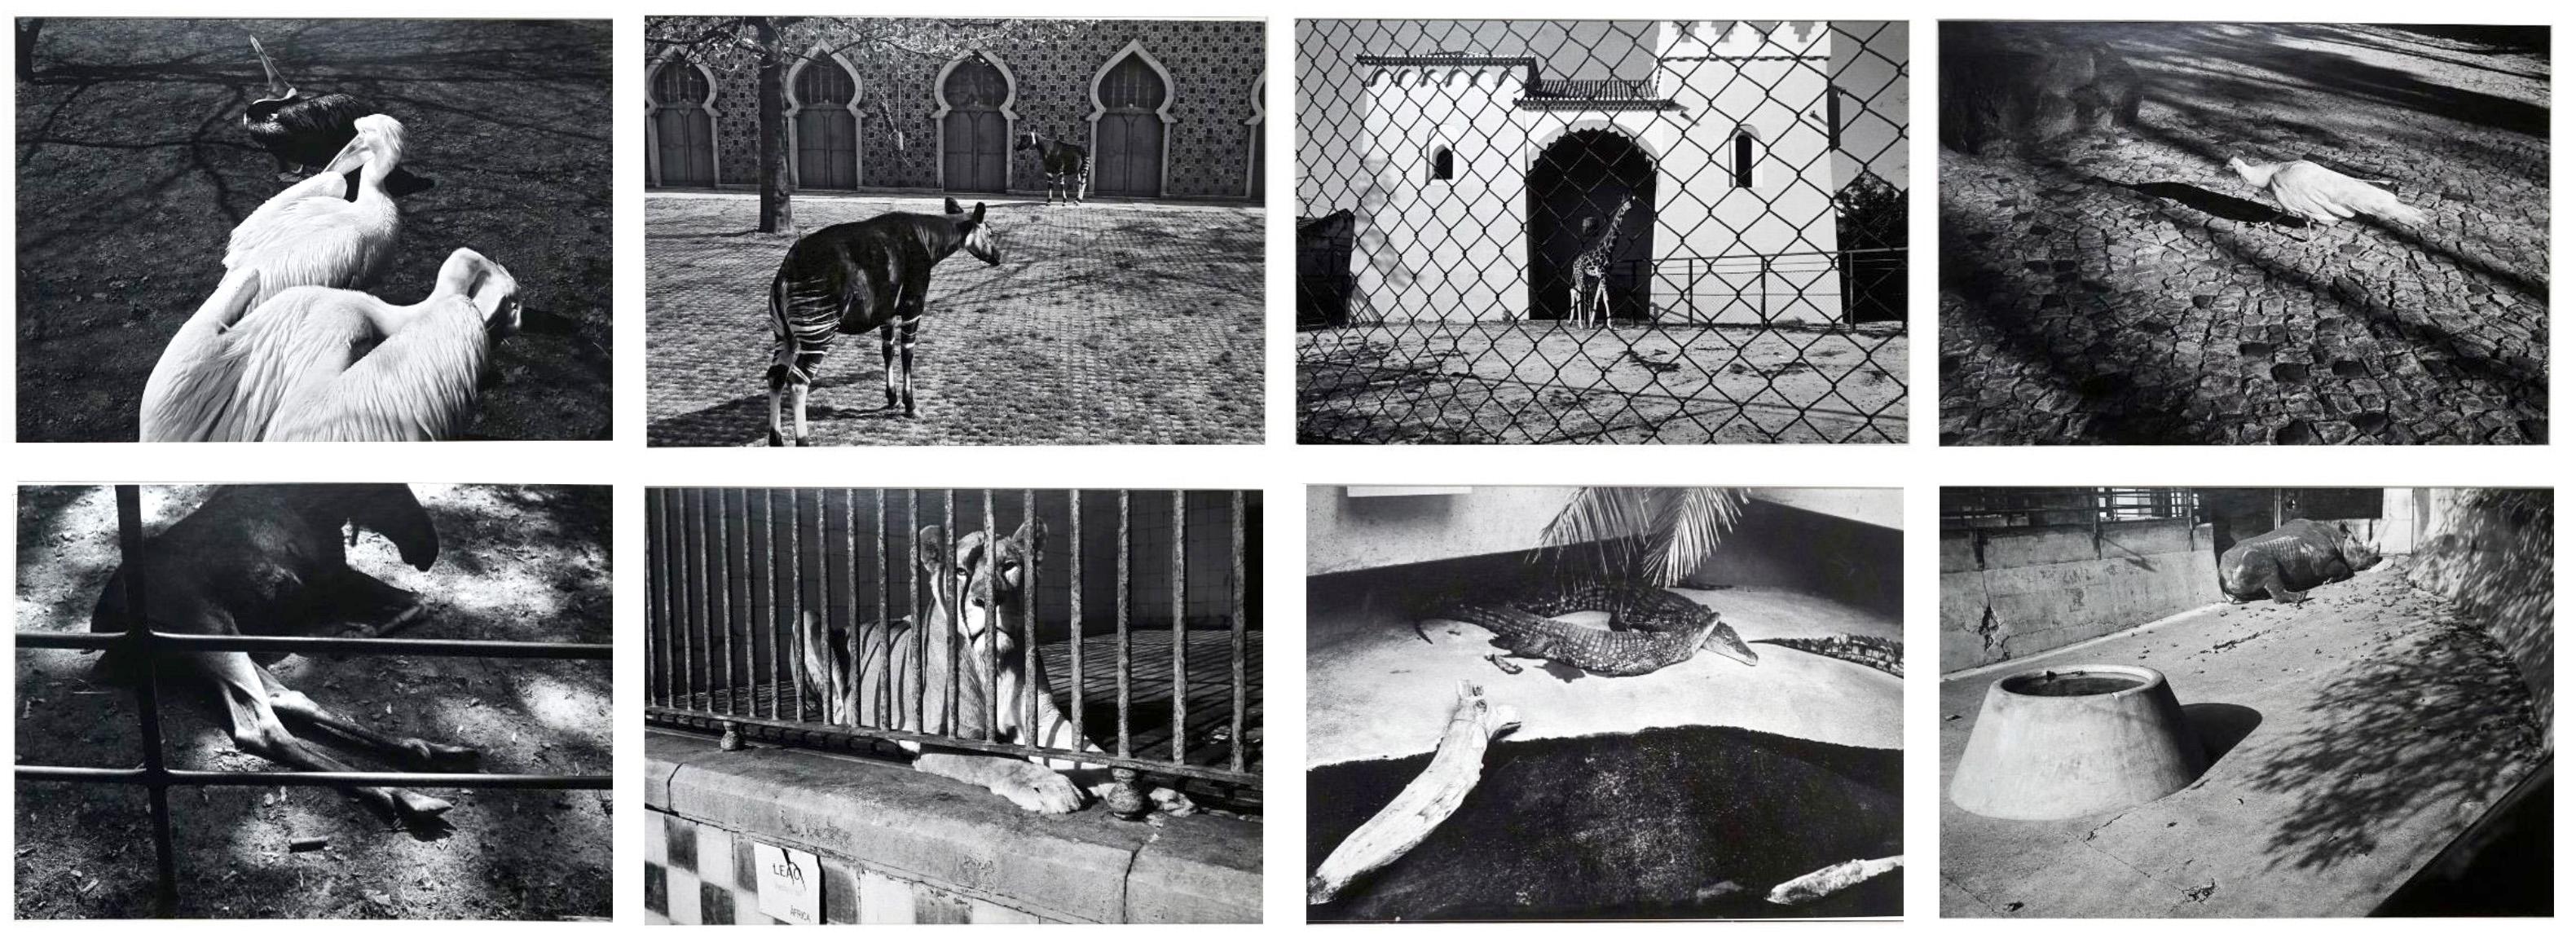 Parc Zoologique - Coffret Prestige # 3 - 1980, Minimalist Black and White Photog